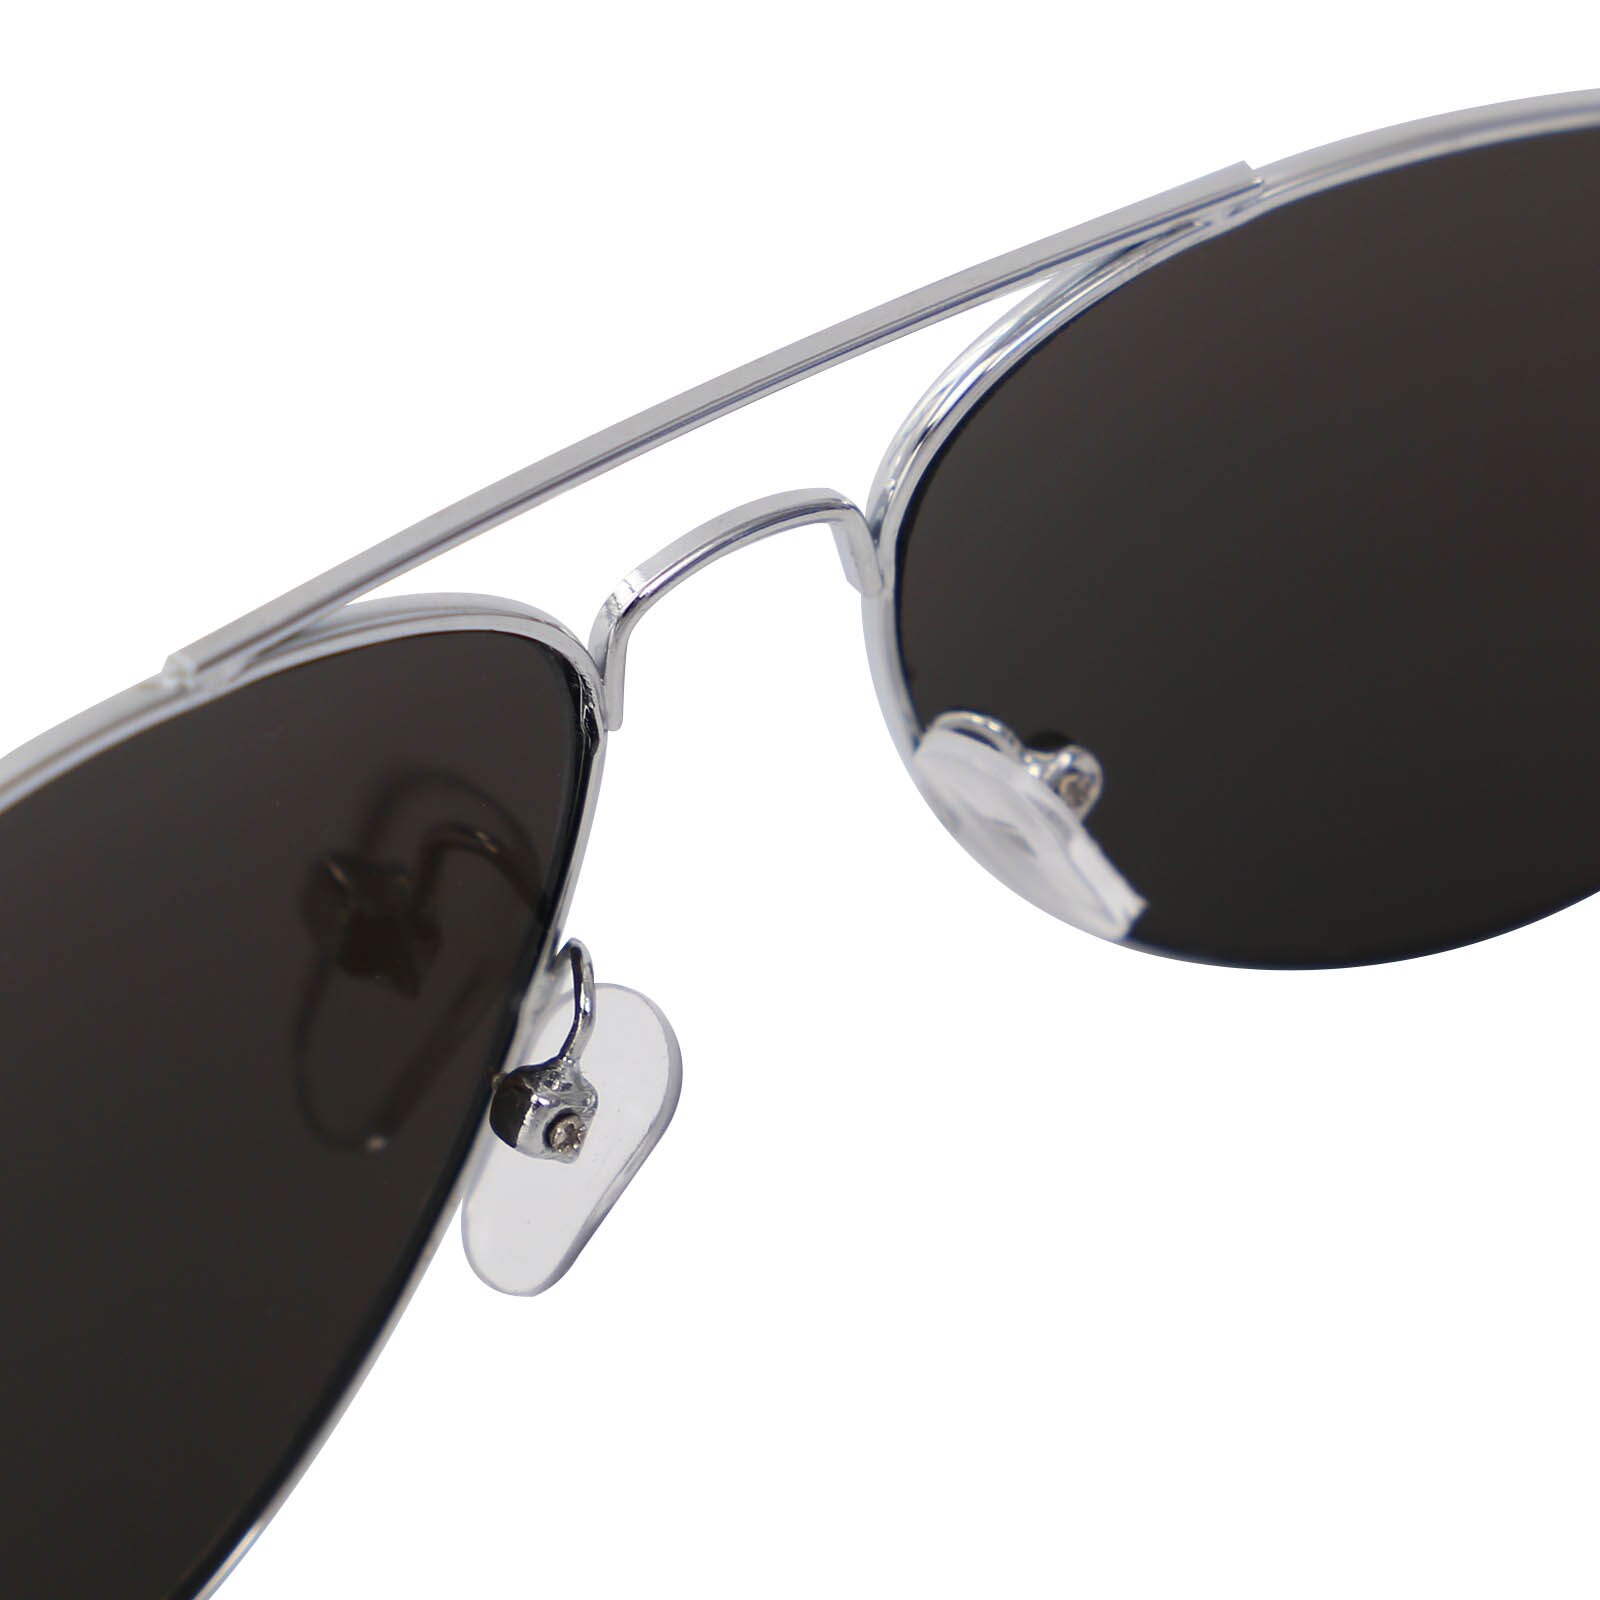 CellDeal UV400 Schutz Sonnenbrille Anti-Uv-Reflexion von freundlicher Spiegel Brillante Durchführen retro Pilot Kind Junge Mädchen